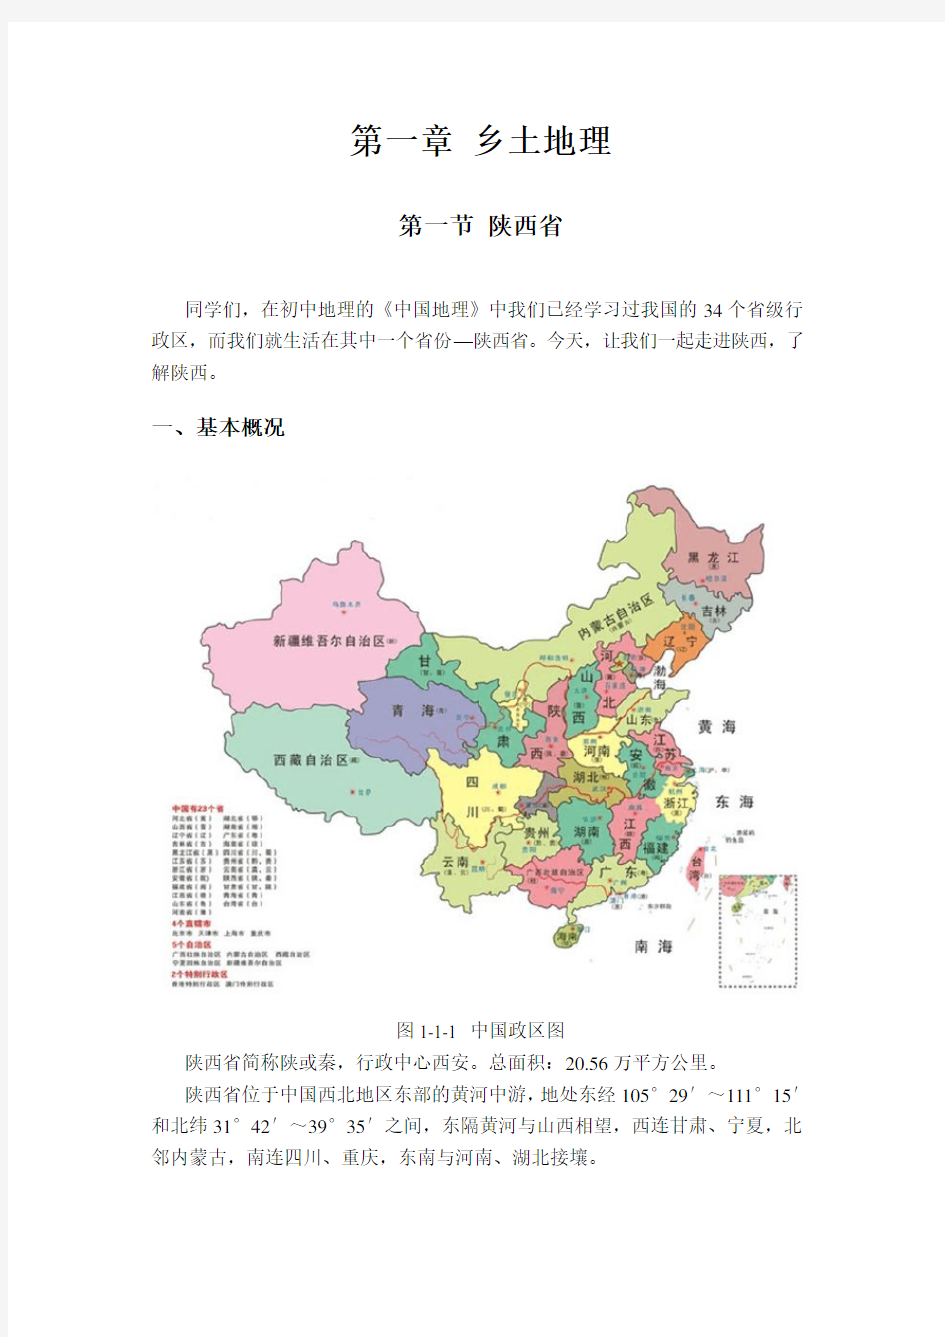 乡土地理(陕西省和西安市)